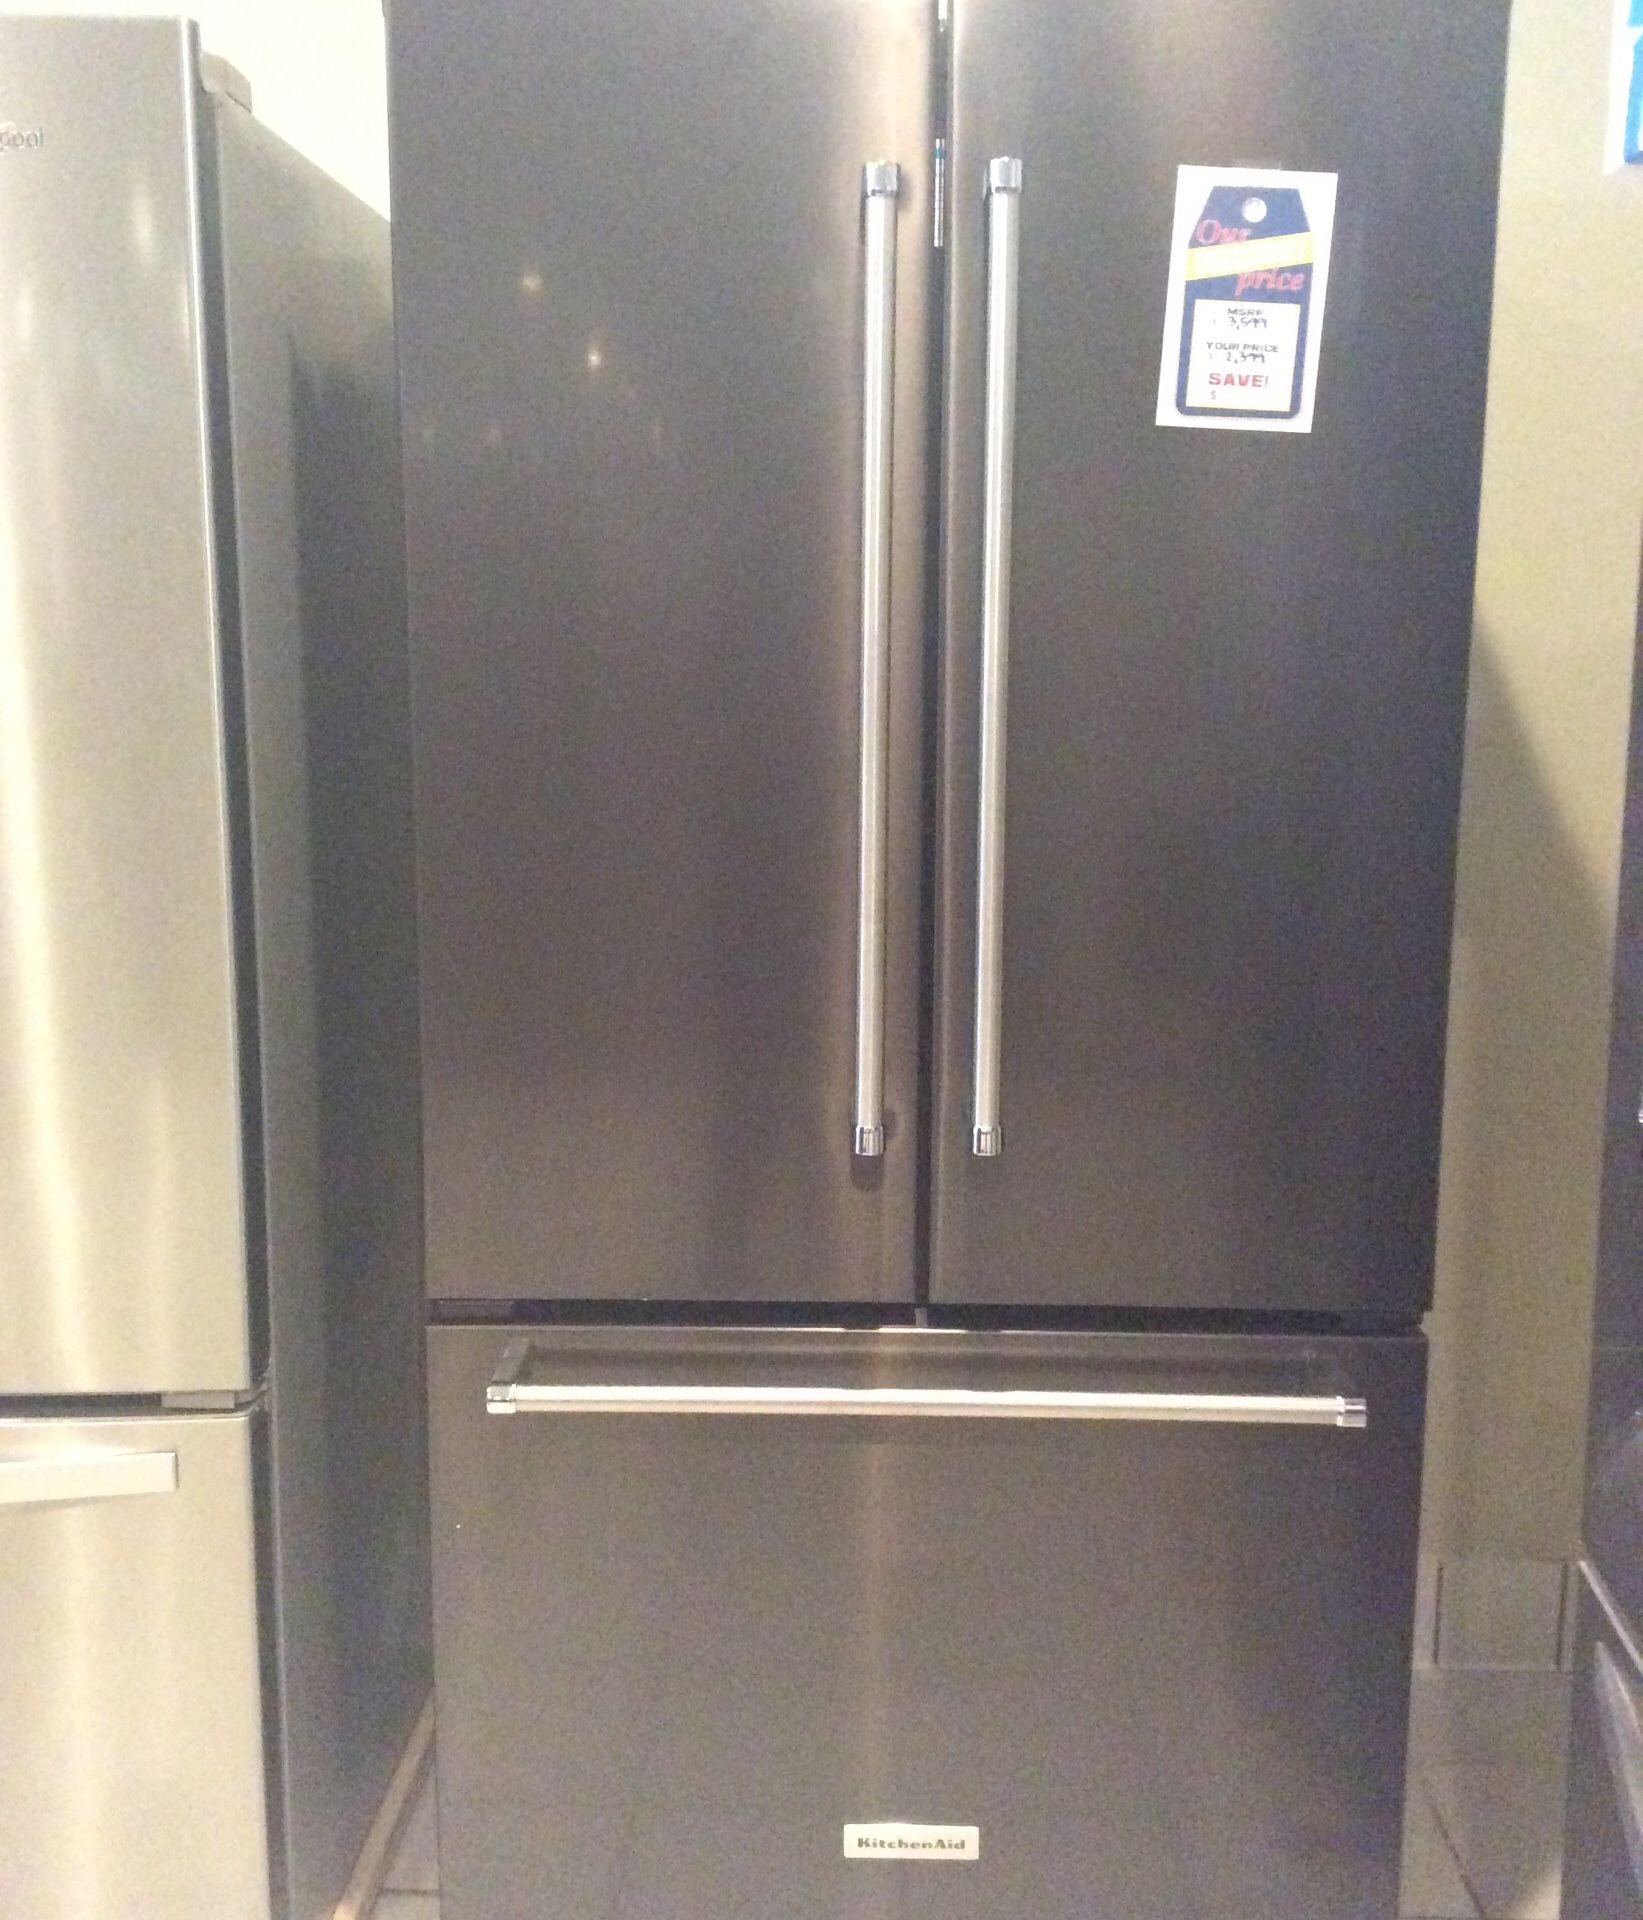 New open box kitchen aid black stainless steel refrigerator KRFC302EBS